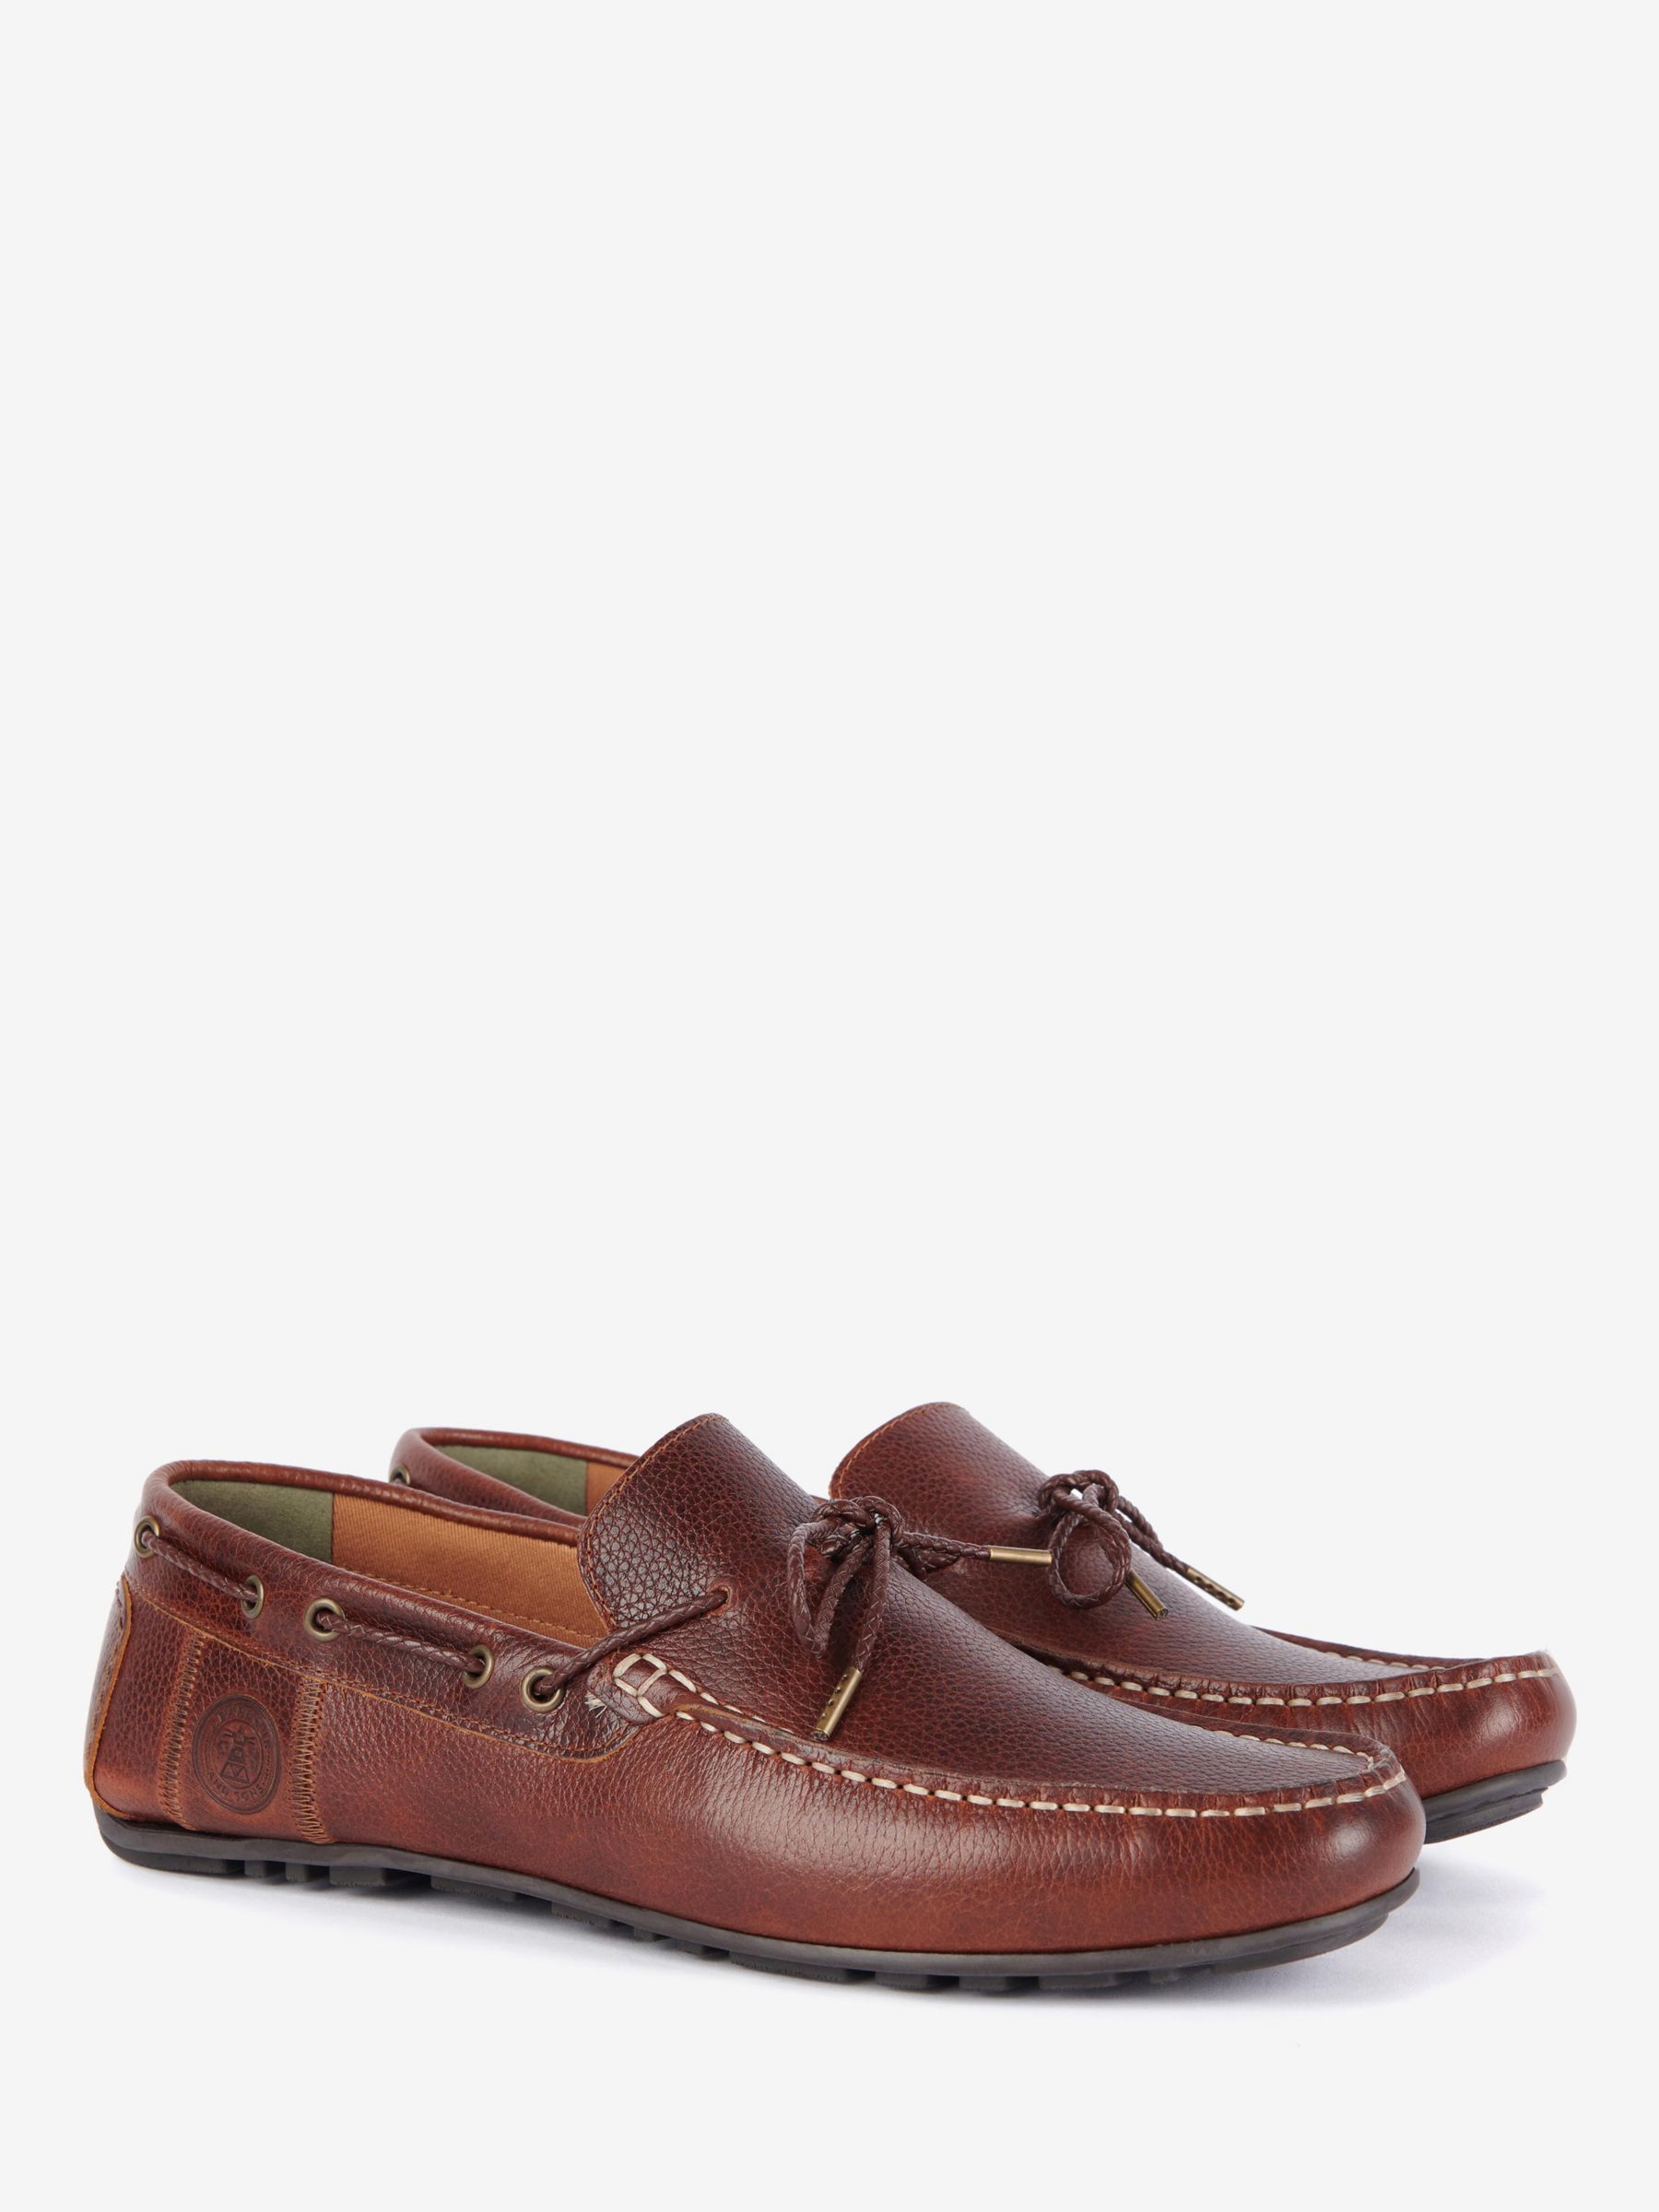 Barbour Jenson Boat Shoes, Cognac, 7